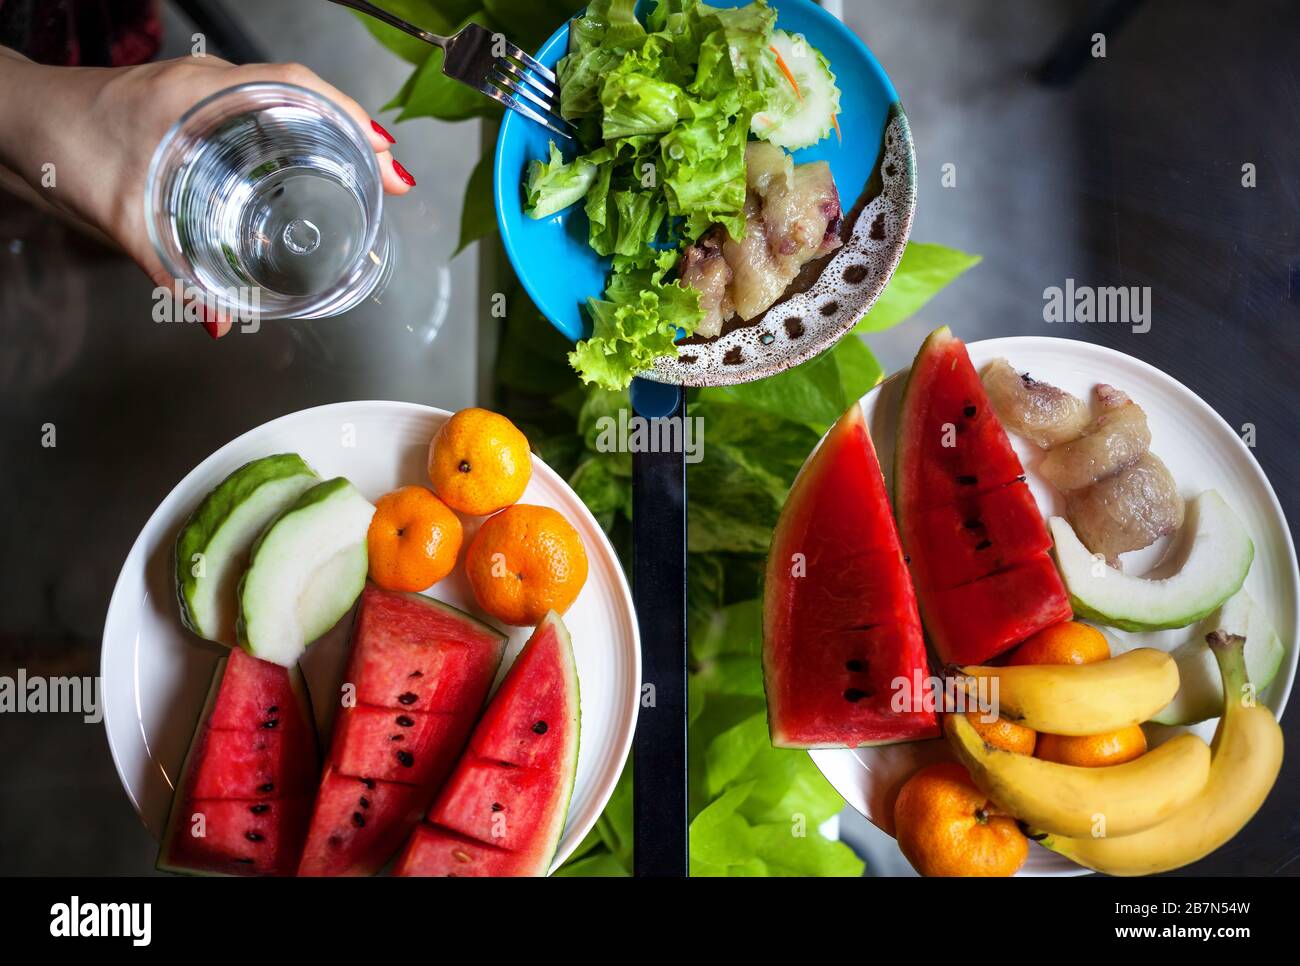 Piastra con cocomero, banana, arance e insalata in ristorante in Thailandia Foto Stock